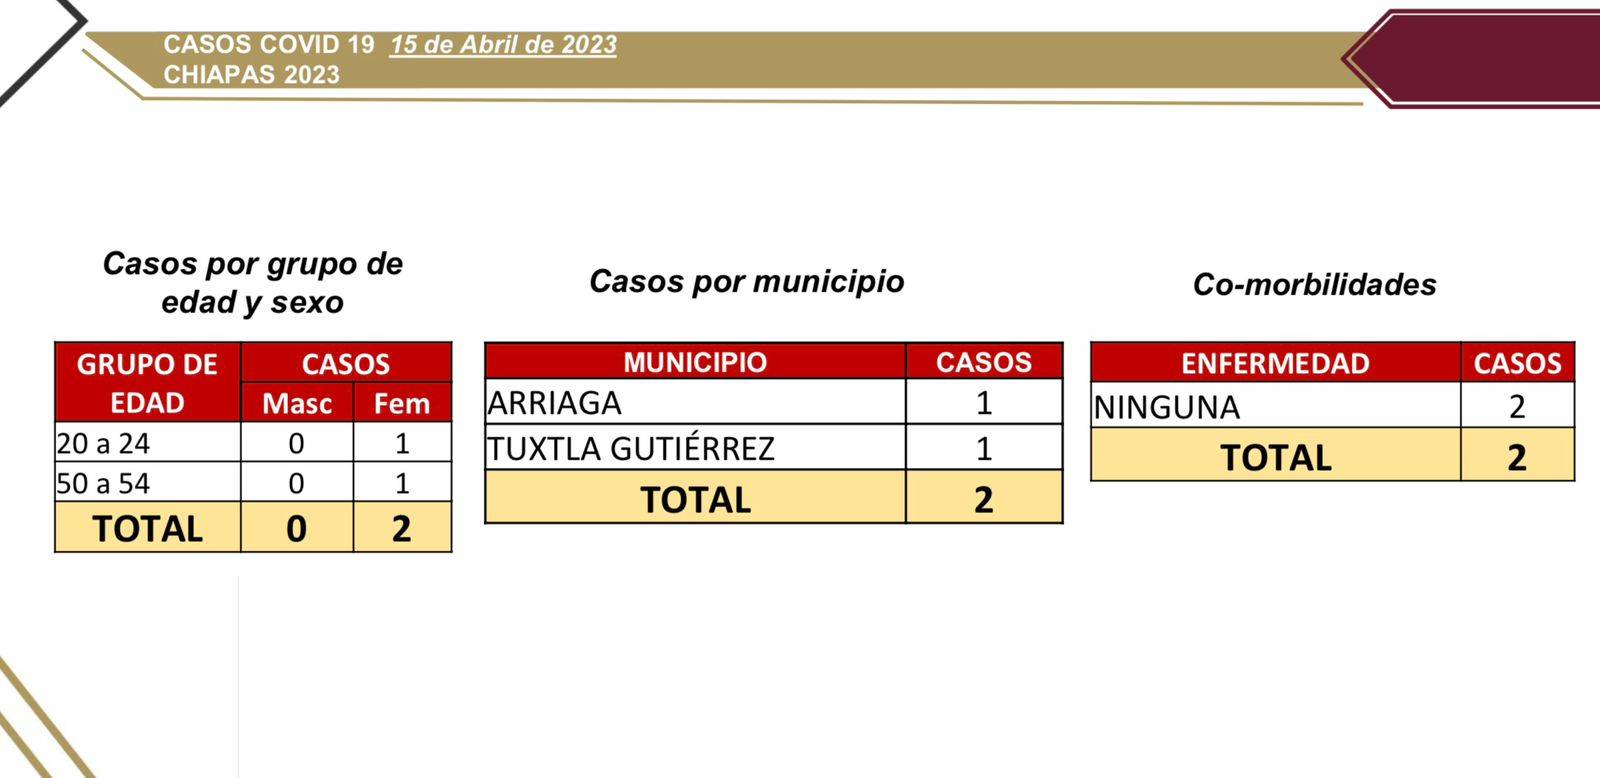 Salud da a conocer dos casos nuevos de COVID-19 en Chiapas.jpg